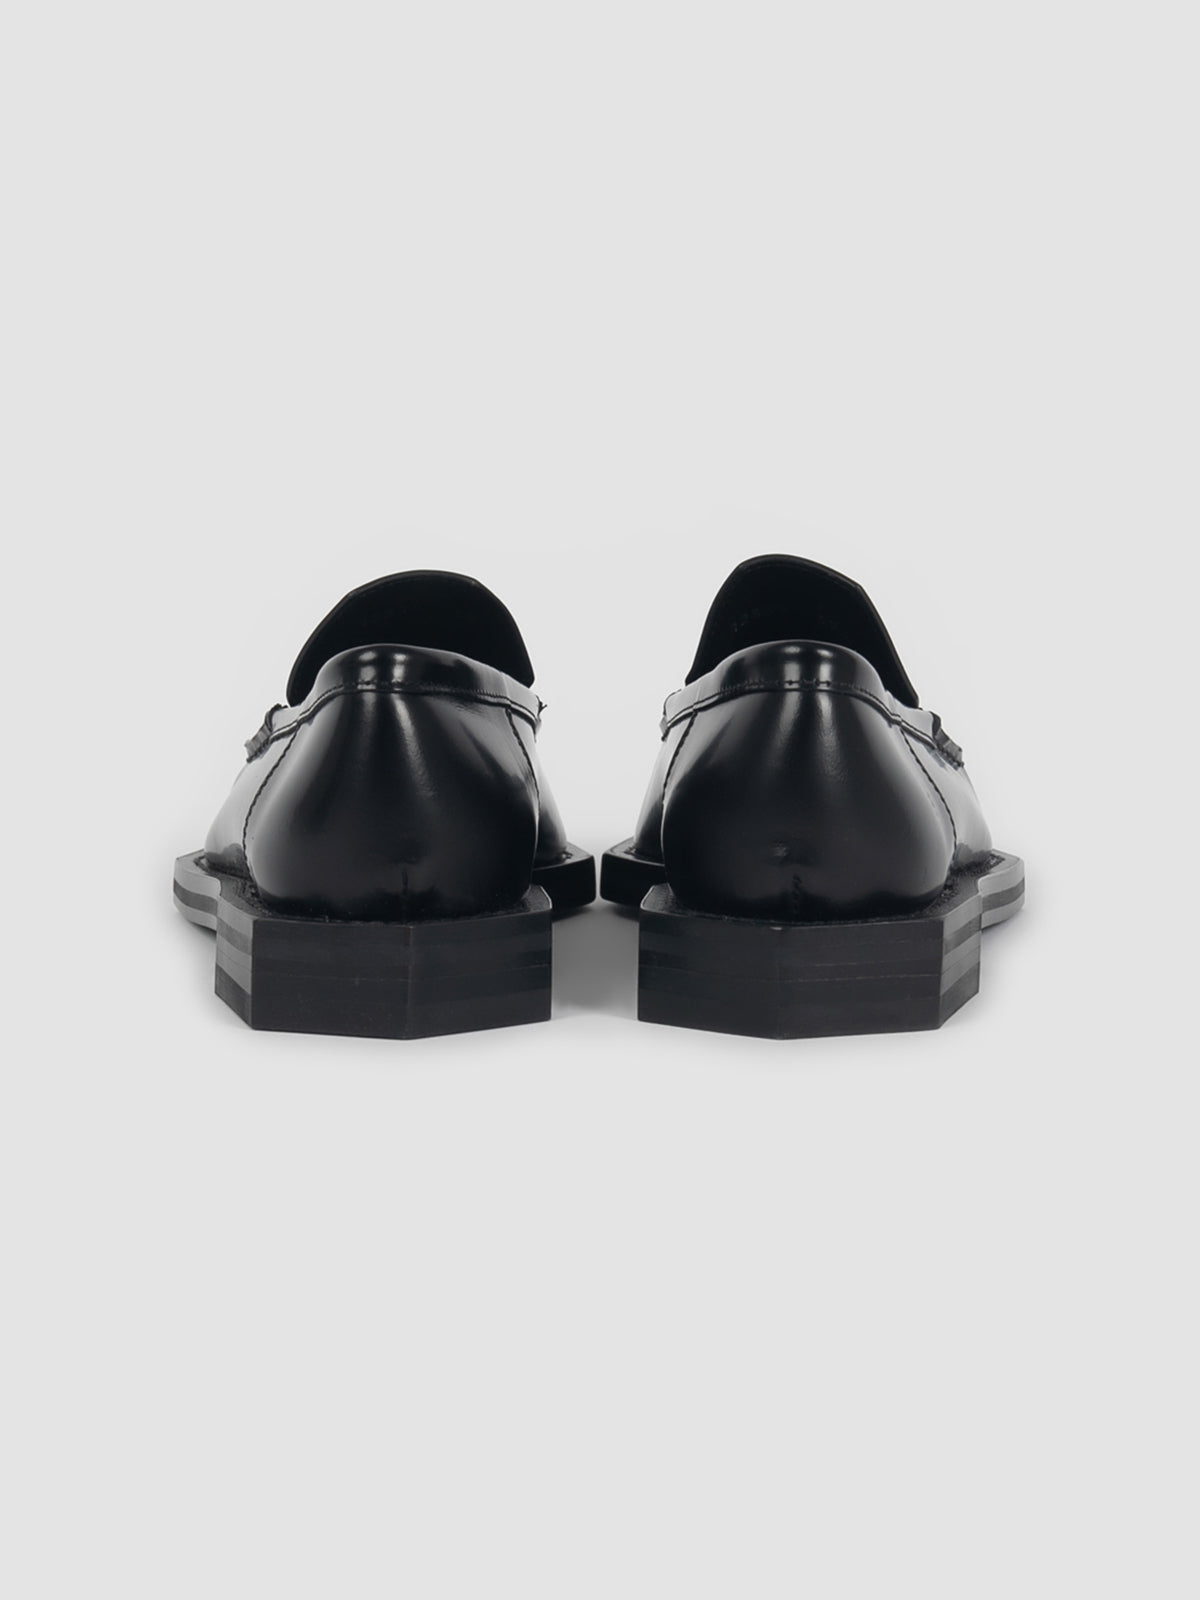 Black 3D Vector loafer shoes